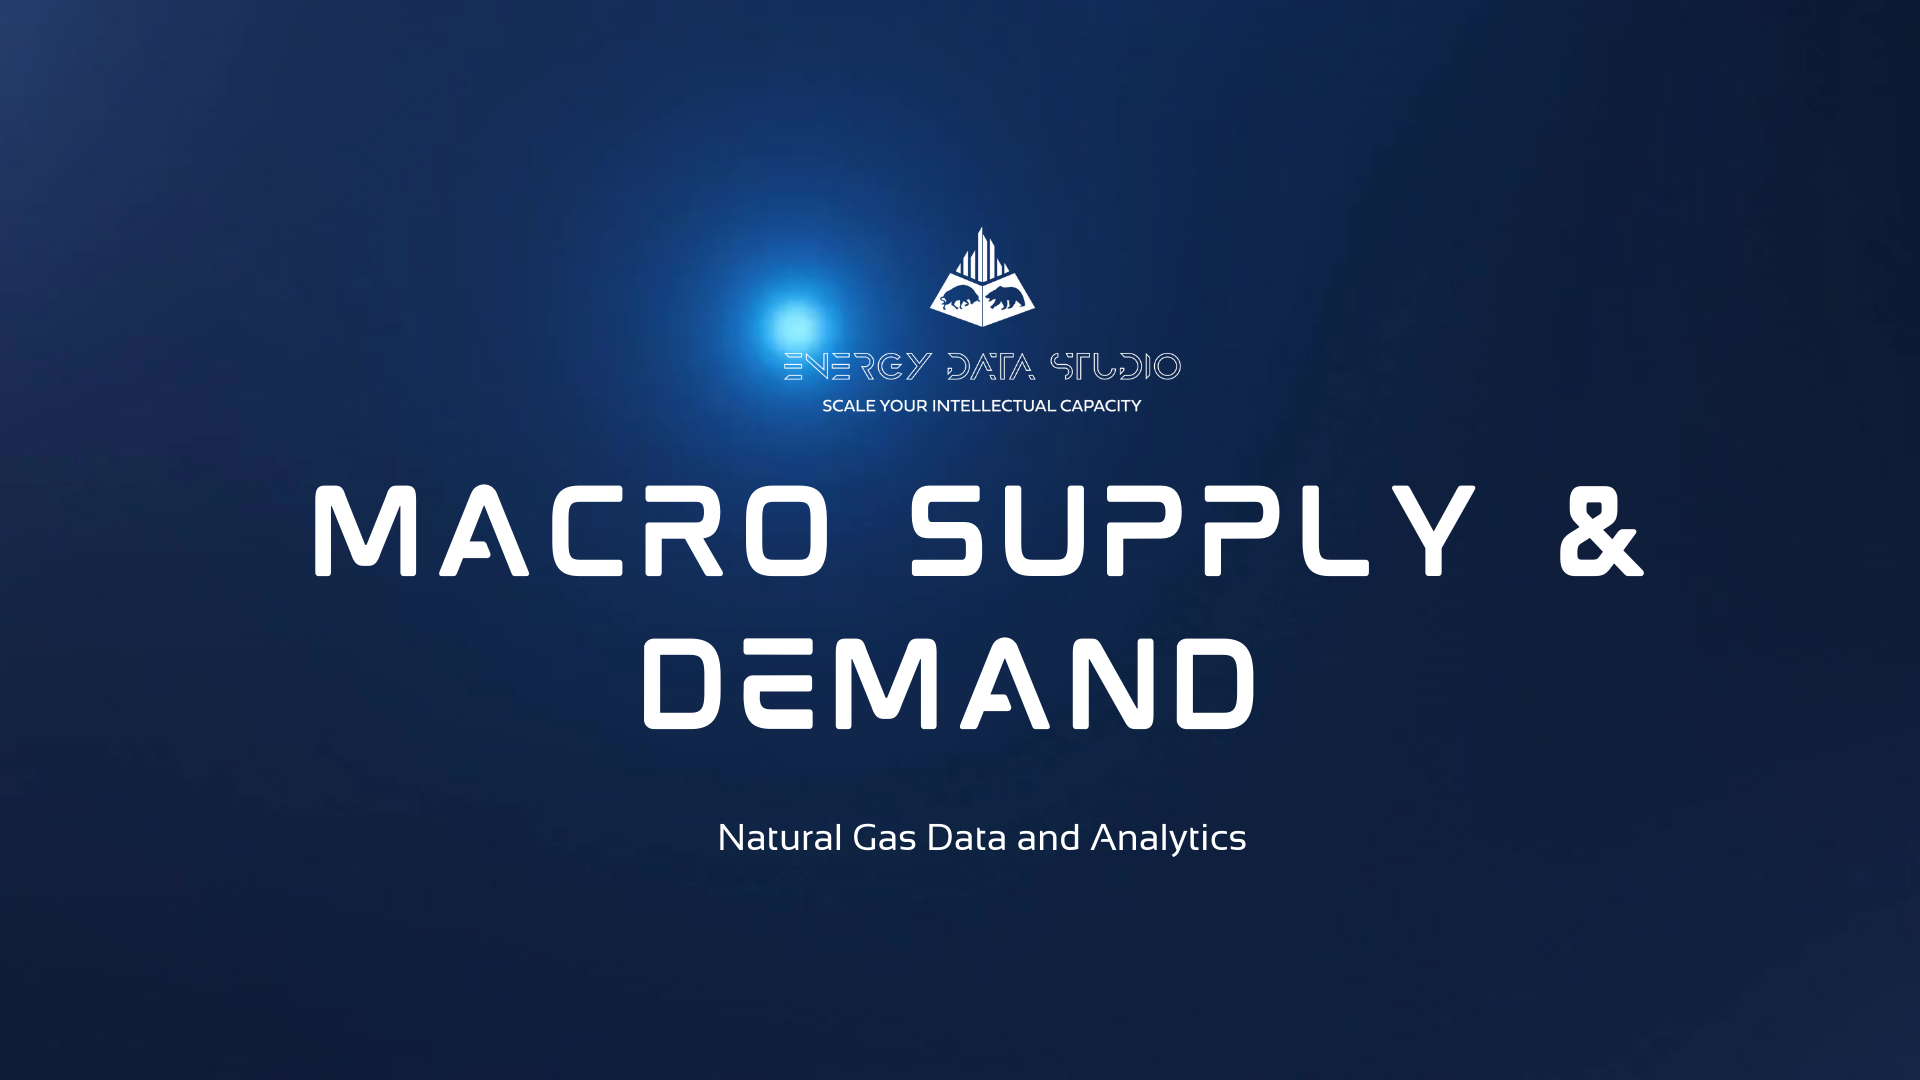 Macro Supply & Demand